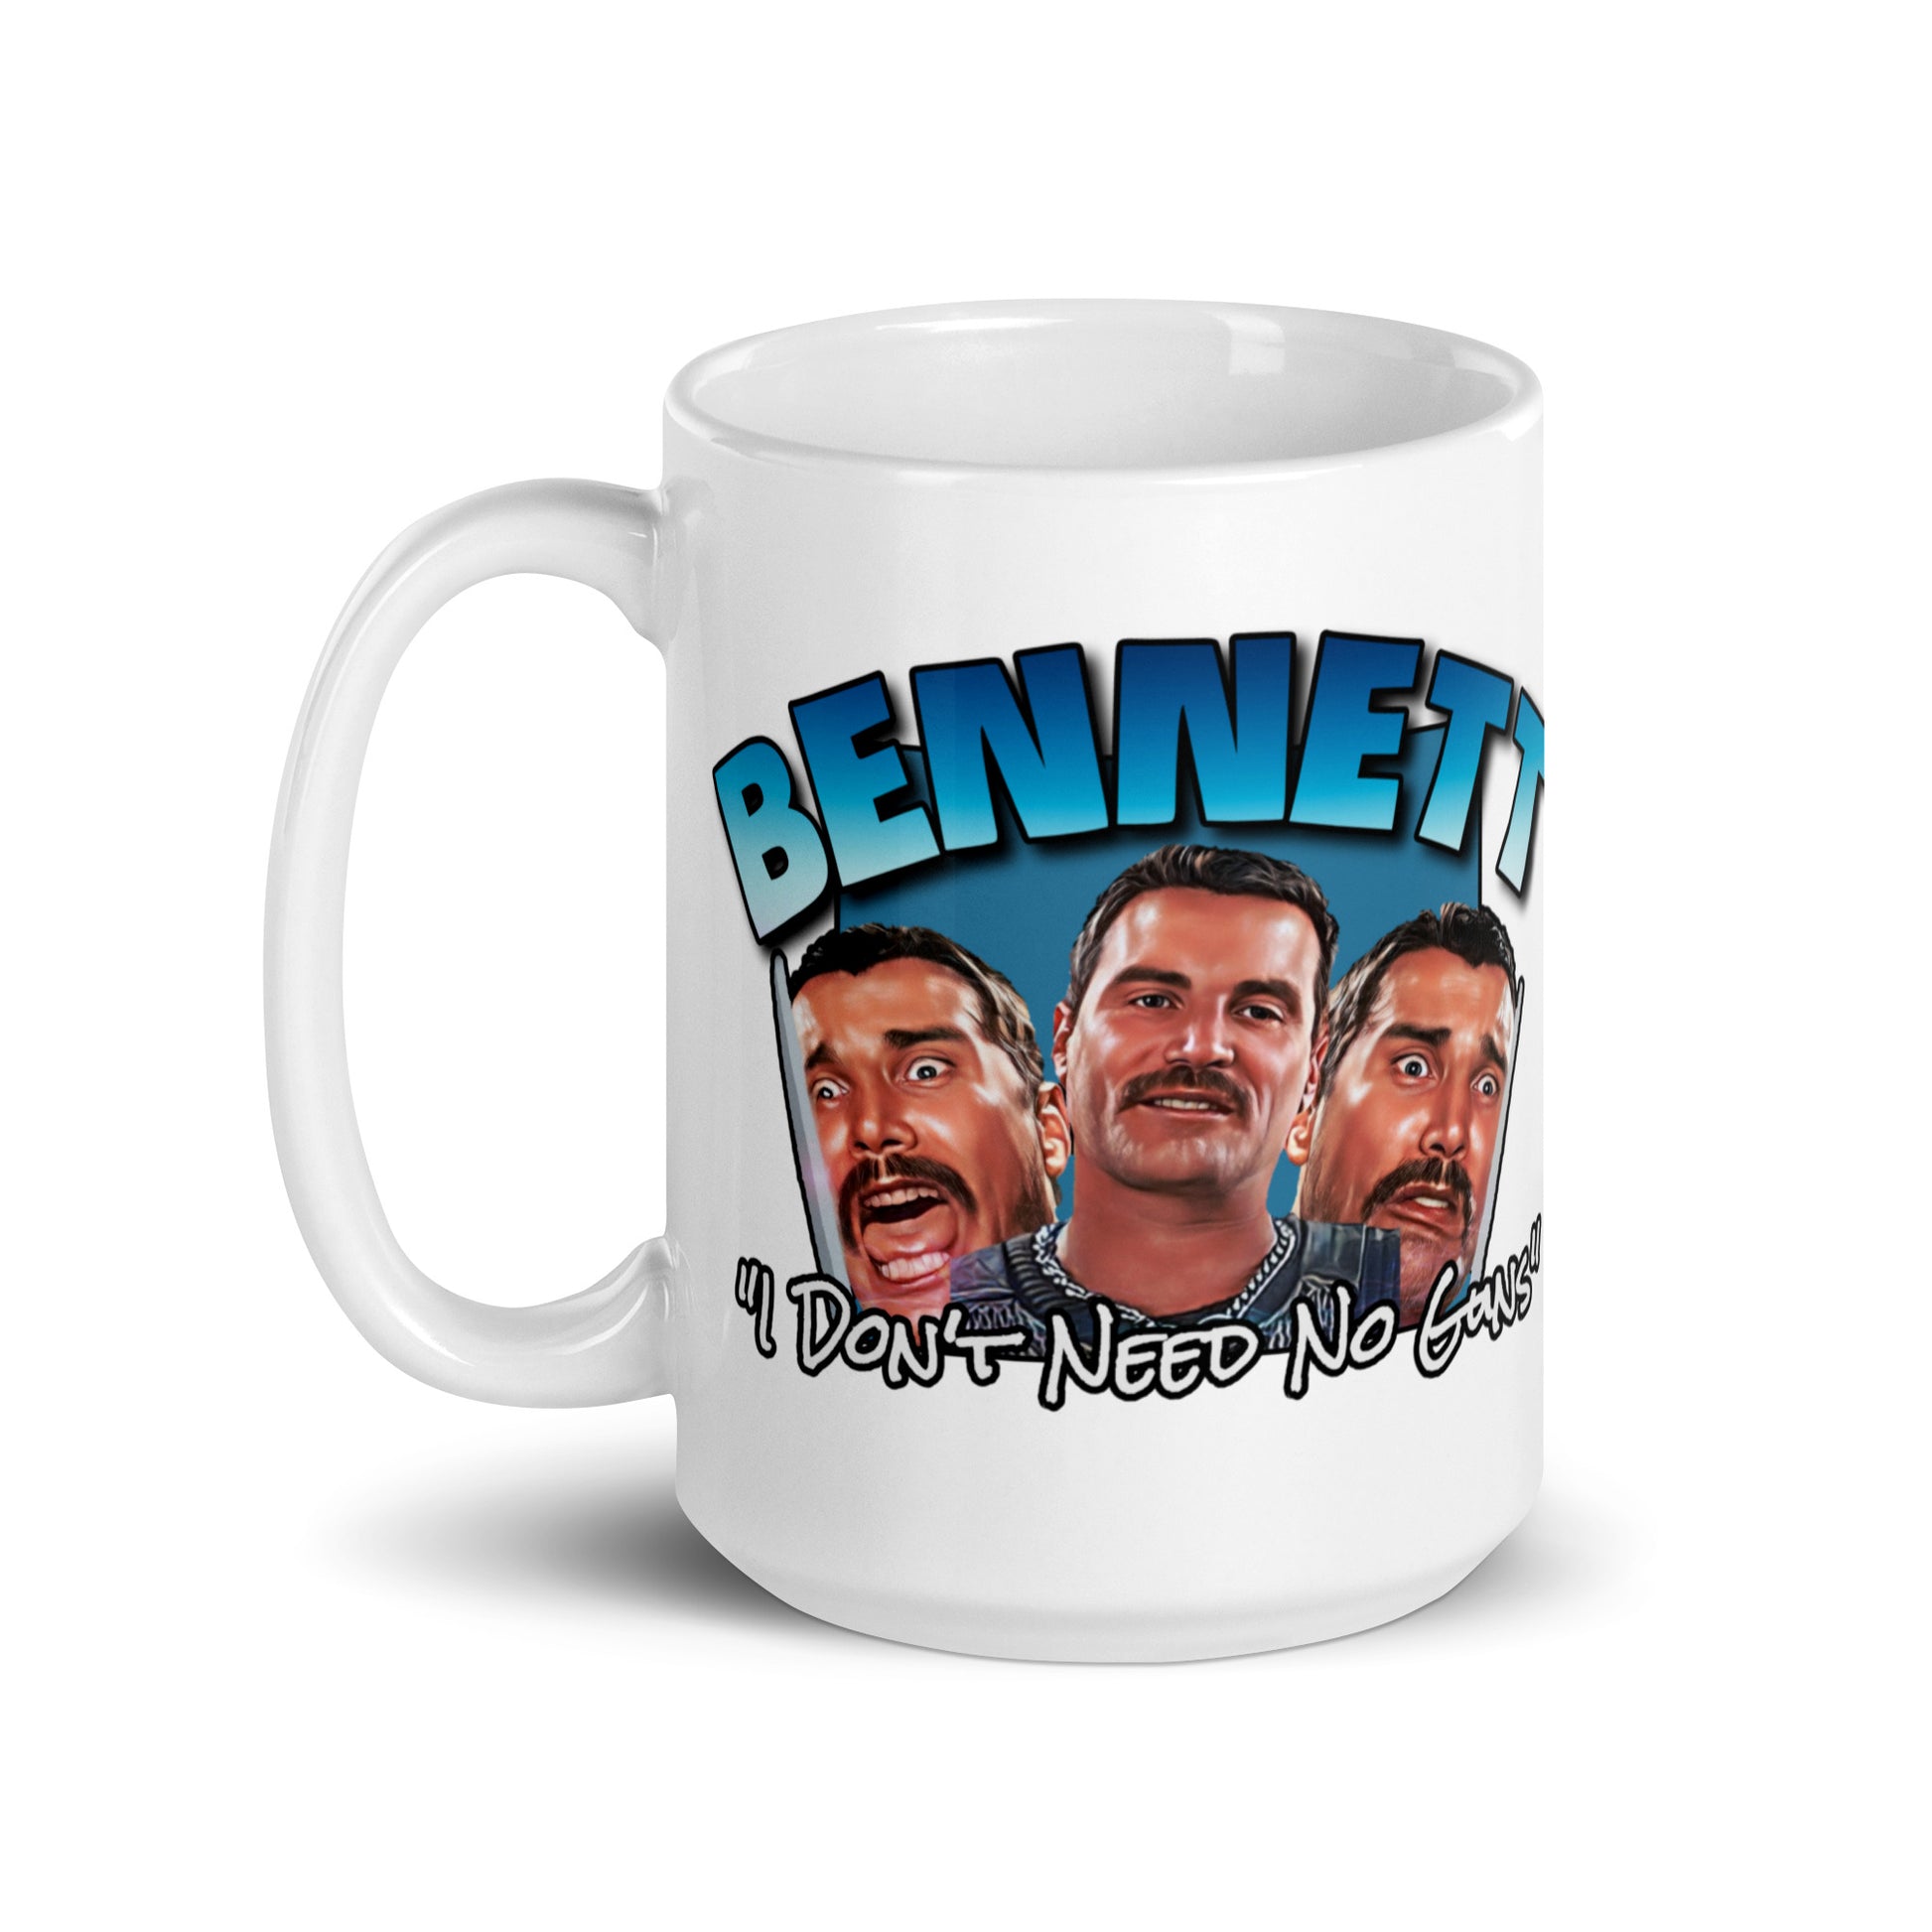 Bennett White glossy mug, commando movie mug, mug commando movie, mug Bennett, movie mug Commando 1985, Coffee mugs - McLaren Tee Hub 